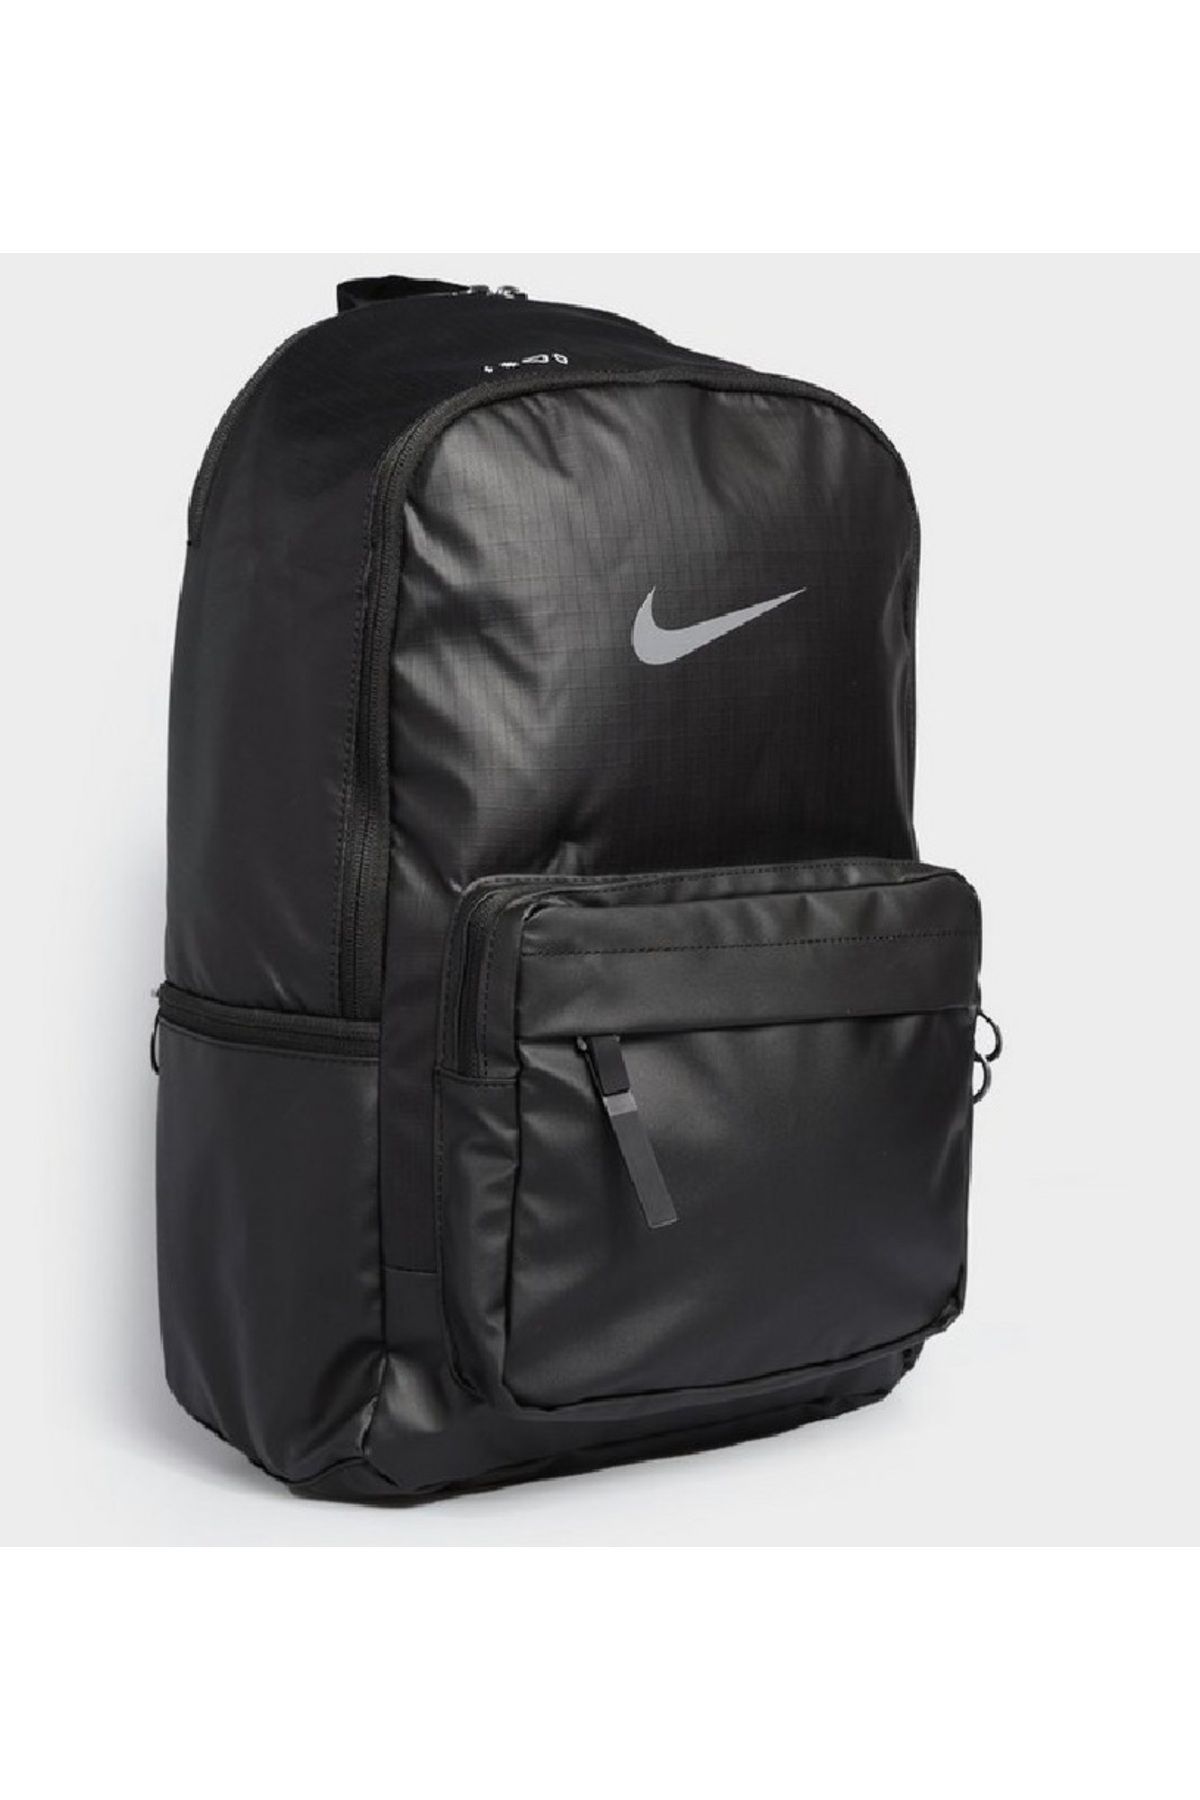 Nike Sırt Çantası Prof Seri Ult Backpack Laptop Bölmeli 3592Siyah